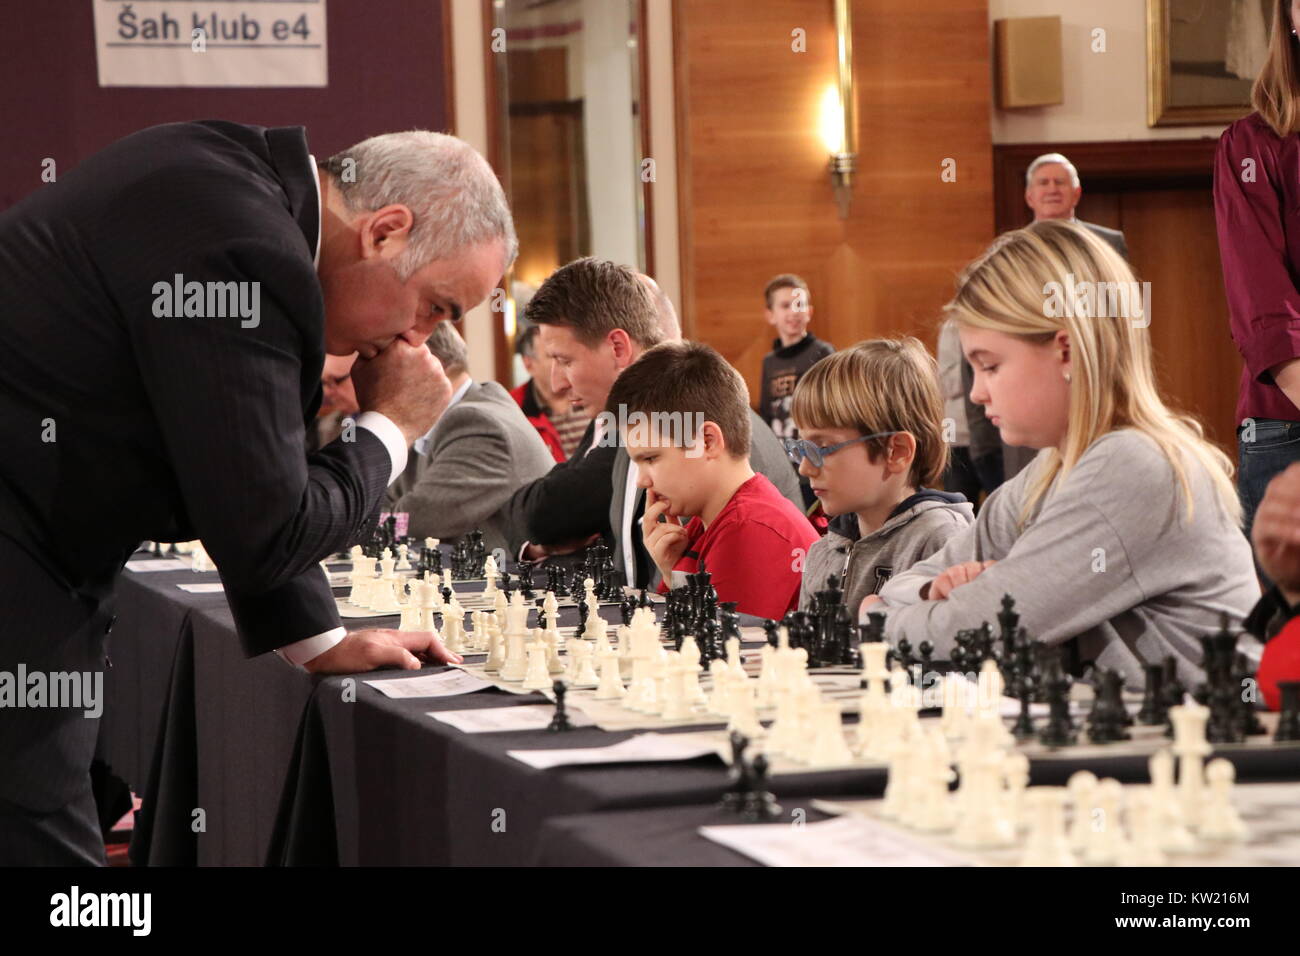 Queen's Gambit Garry Kasparov interview: The former world chess